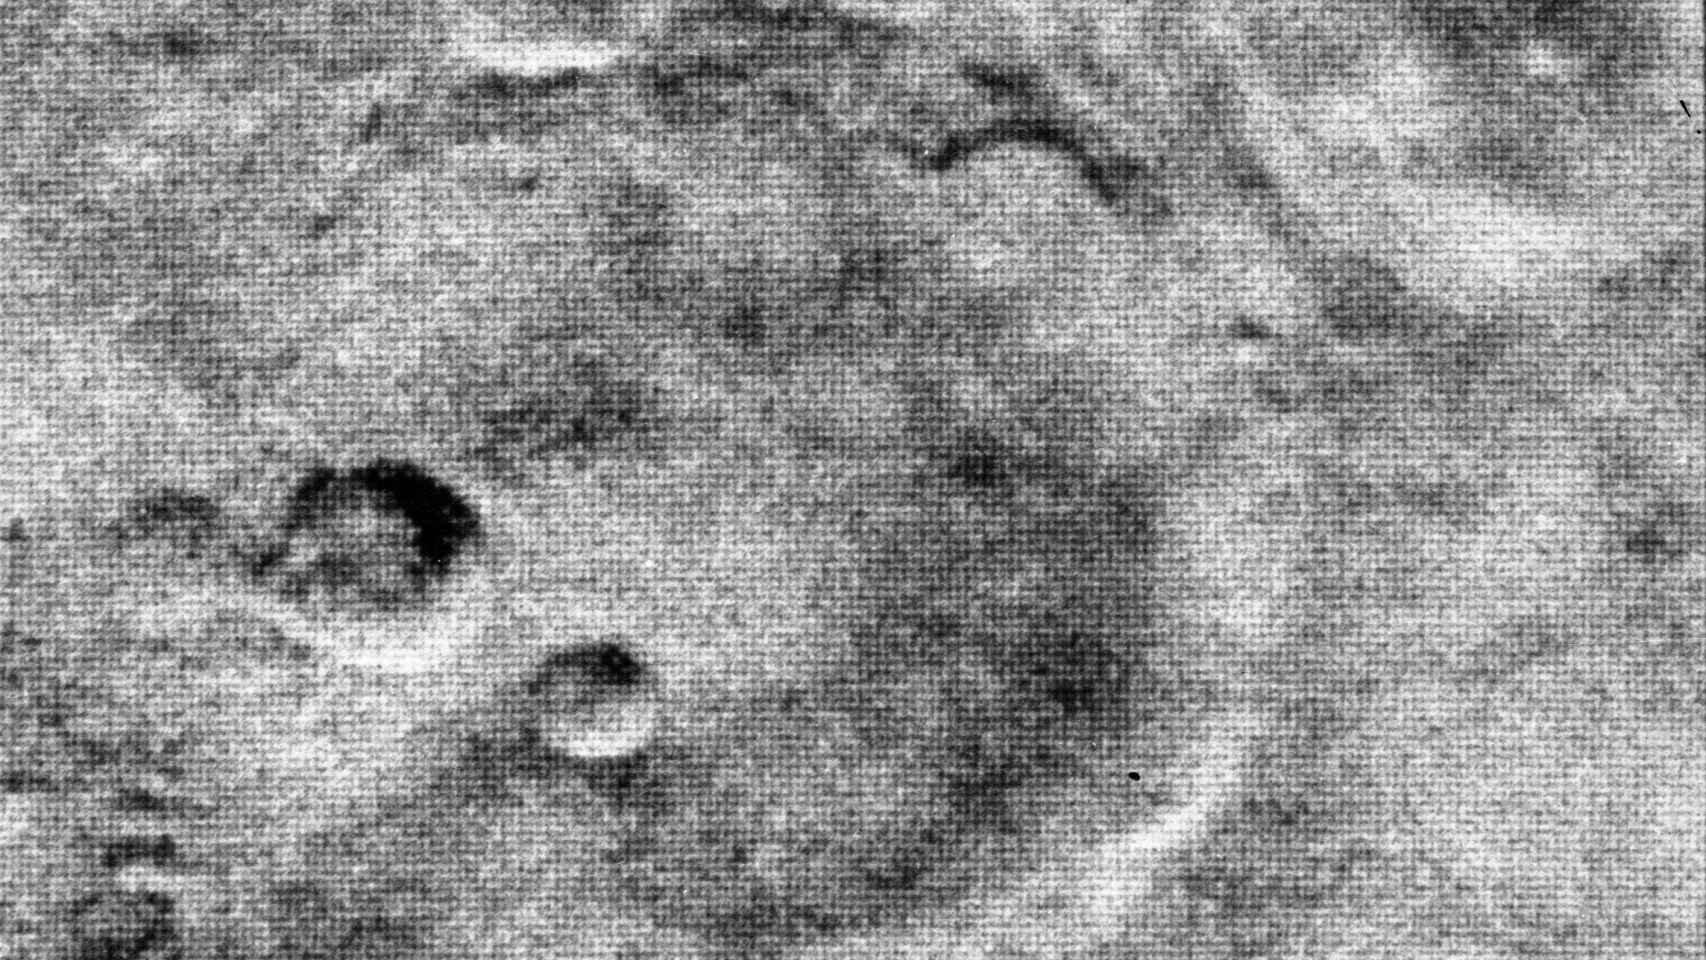 Imagen de Marte transmitida por la sonda Mariner 4 el 15 de julio de 1965. Foto: NASA/JPL